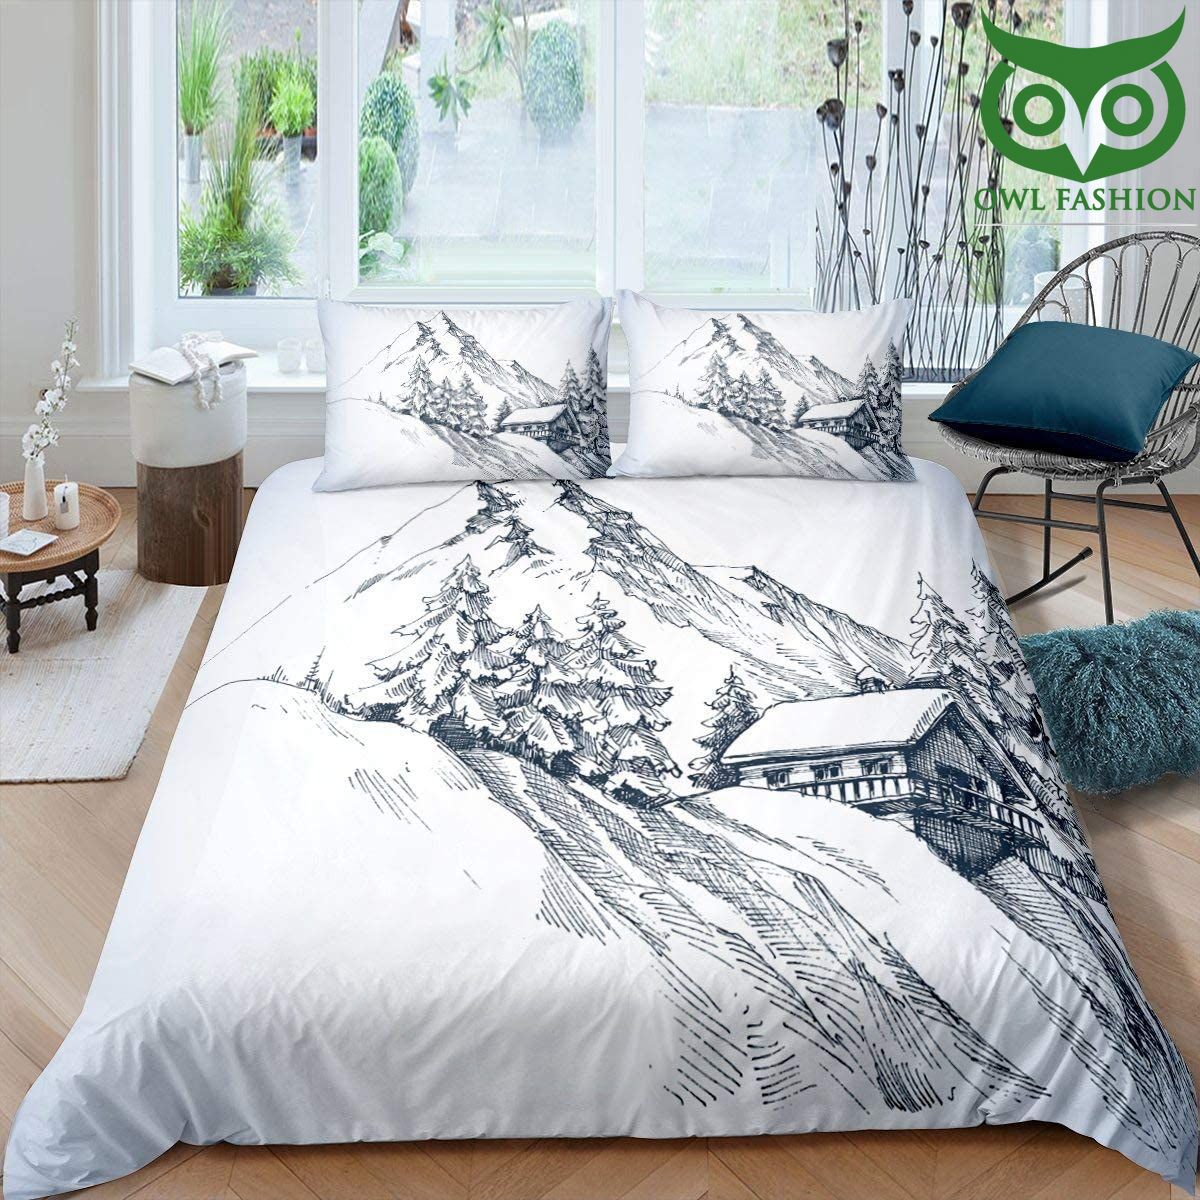 38 Snow mountain bedding set Snow Mountain Black White Simple Sketch Drawing